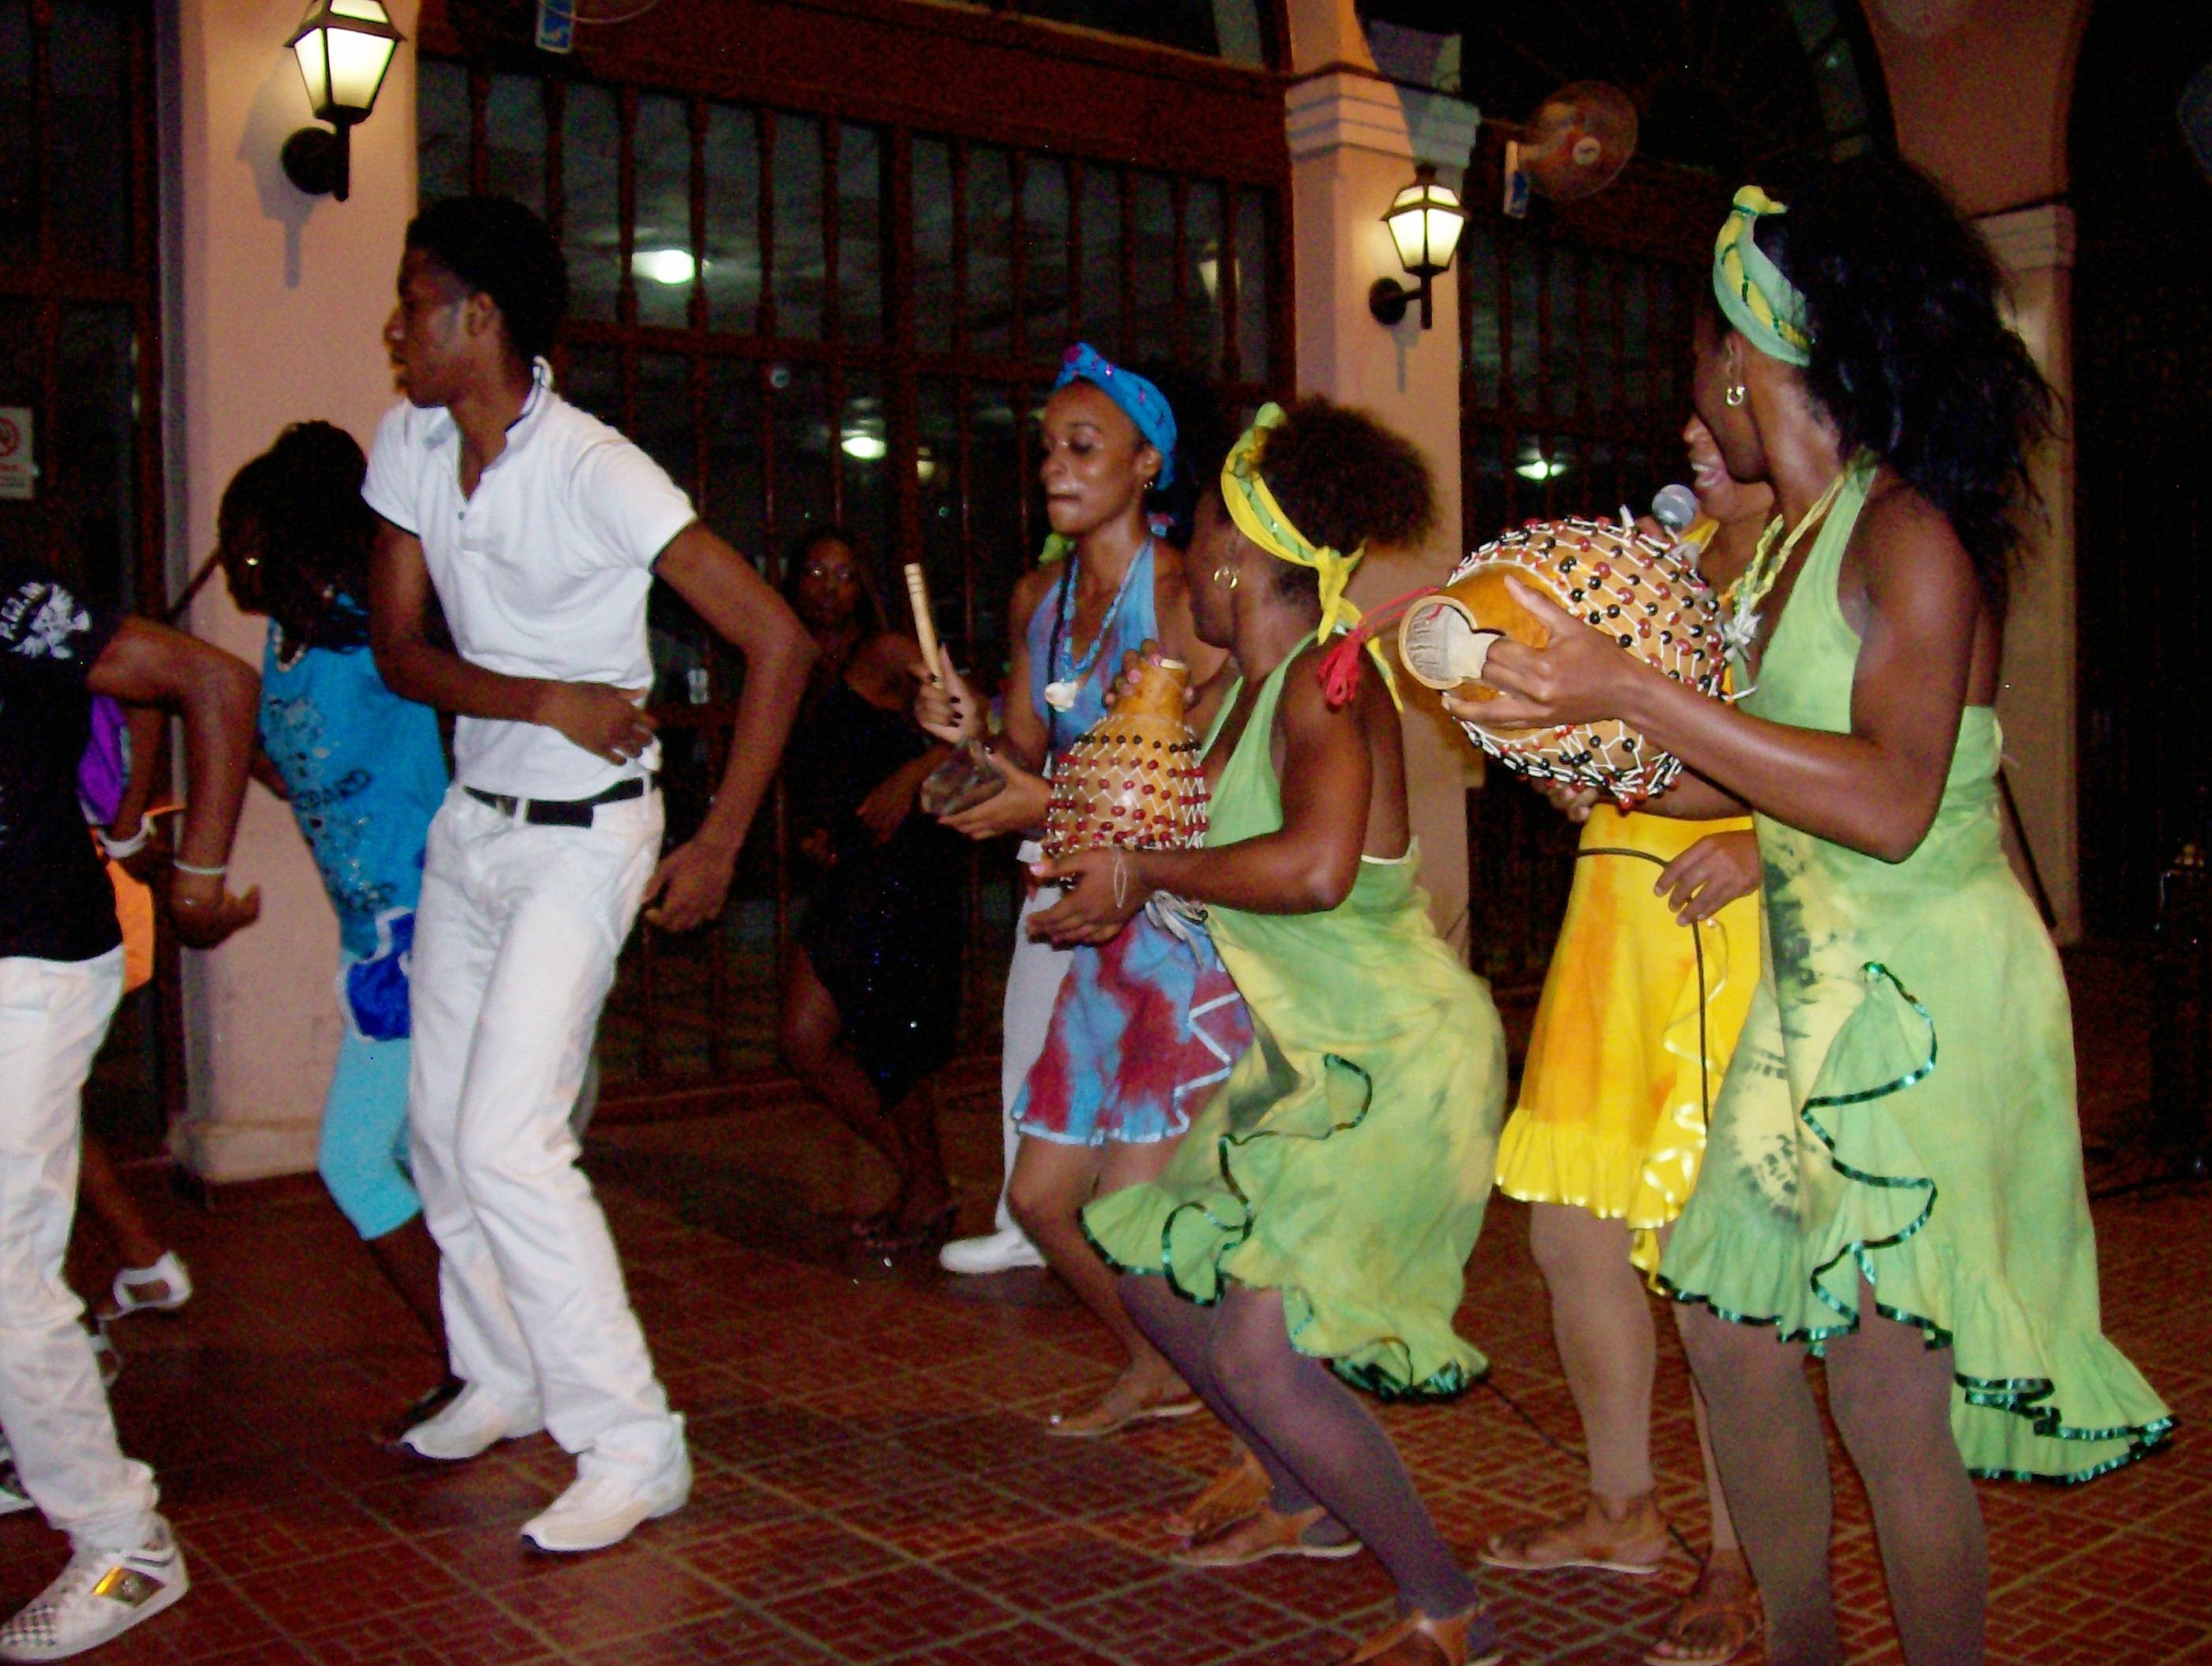 Национальный наряд жителей кубы. кубинская вечеринка — веселье в стиле румбы